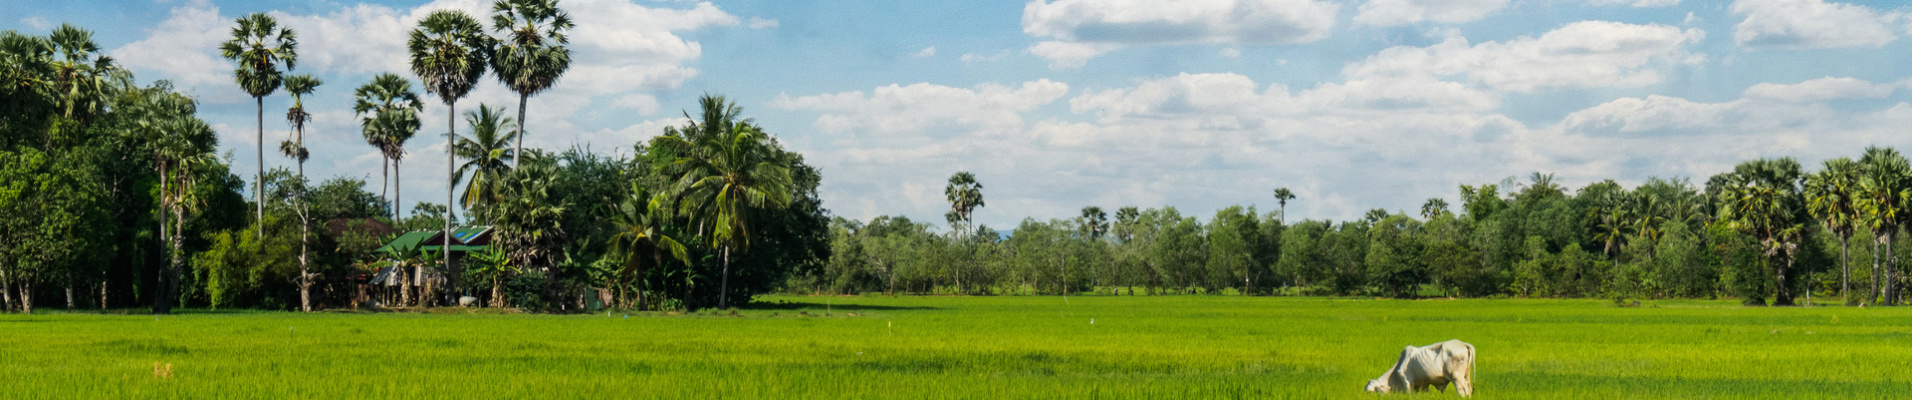 champ cambodge riziere